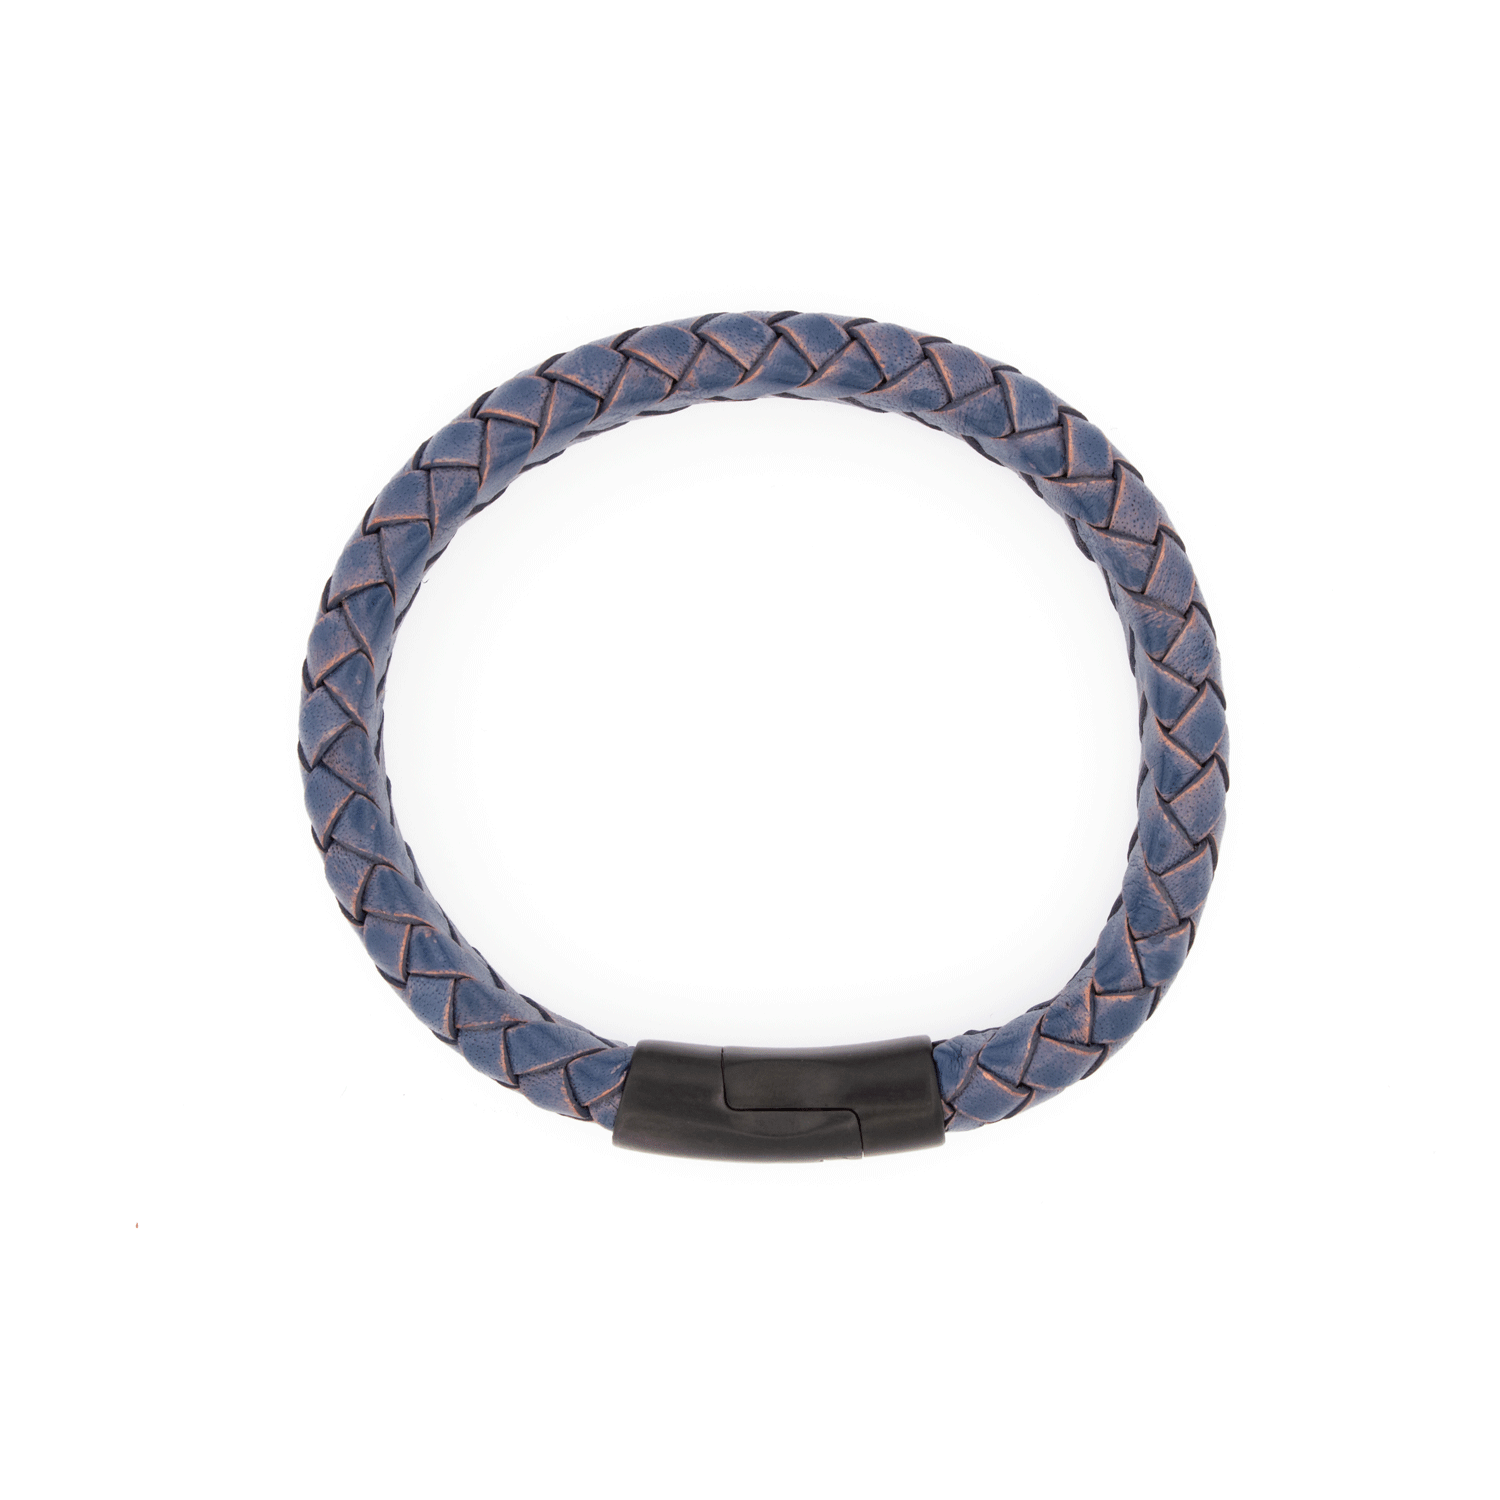 AMSTERDAM SIERAAD - Bracelet Leather Blue